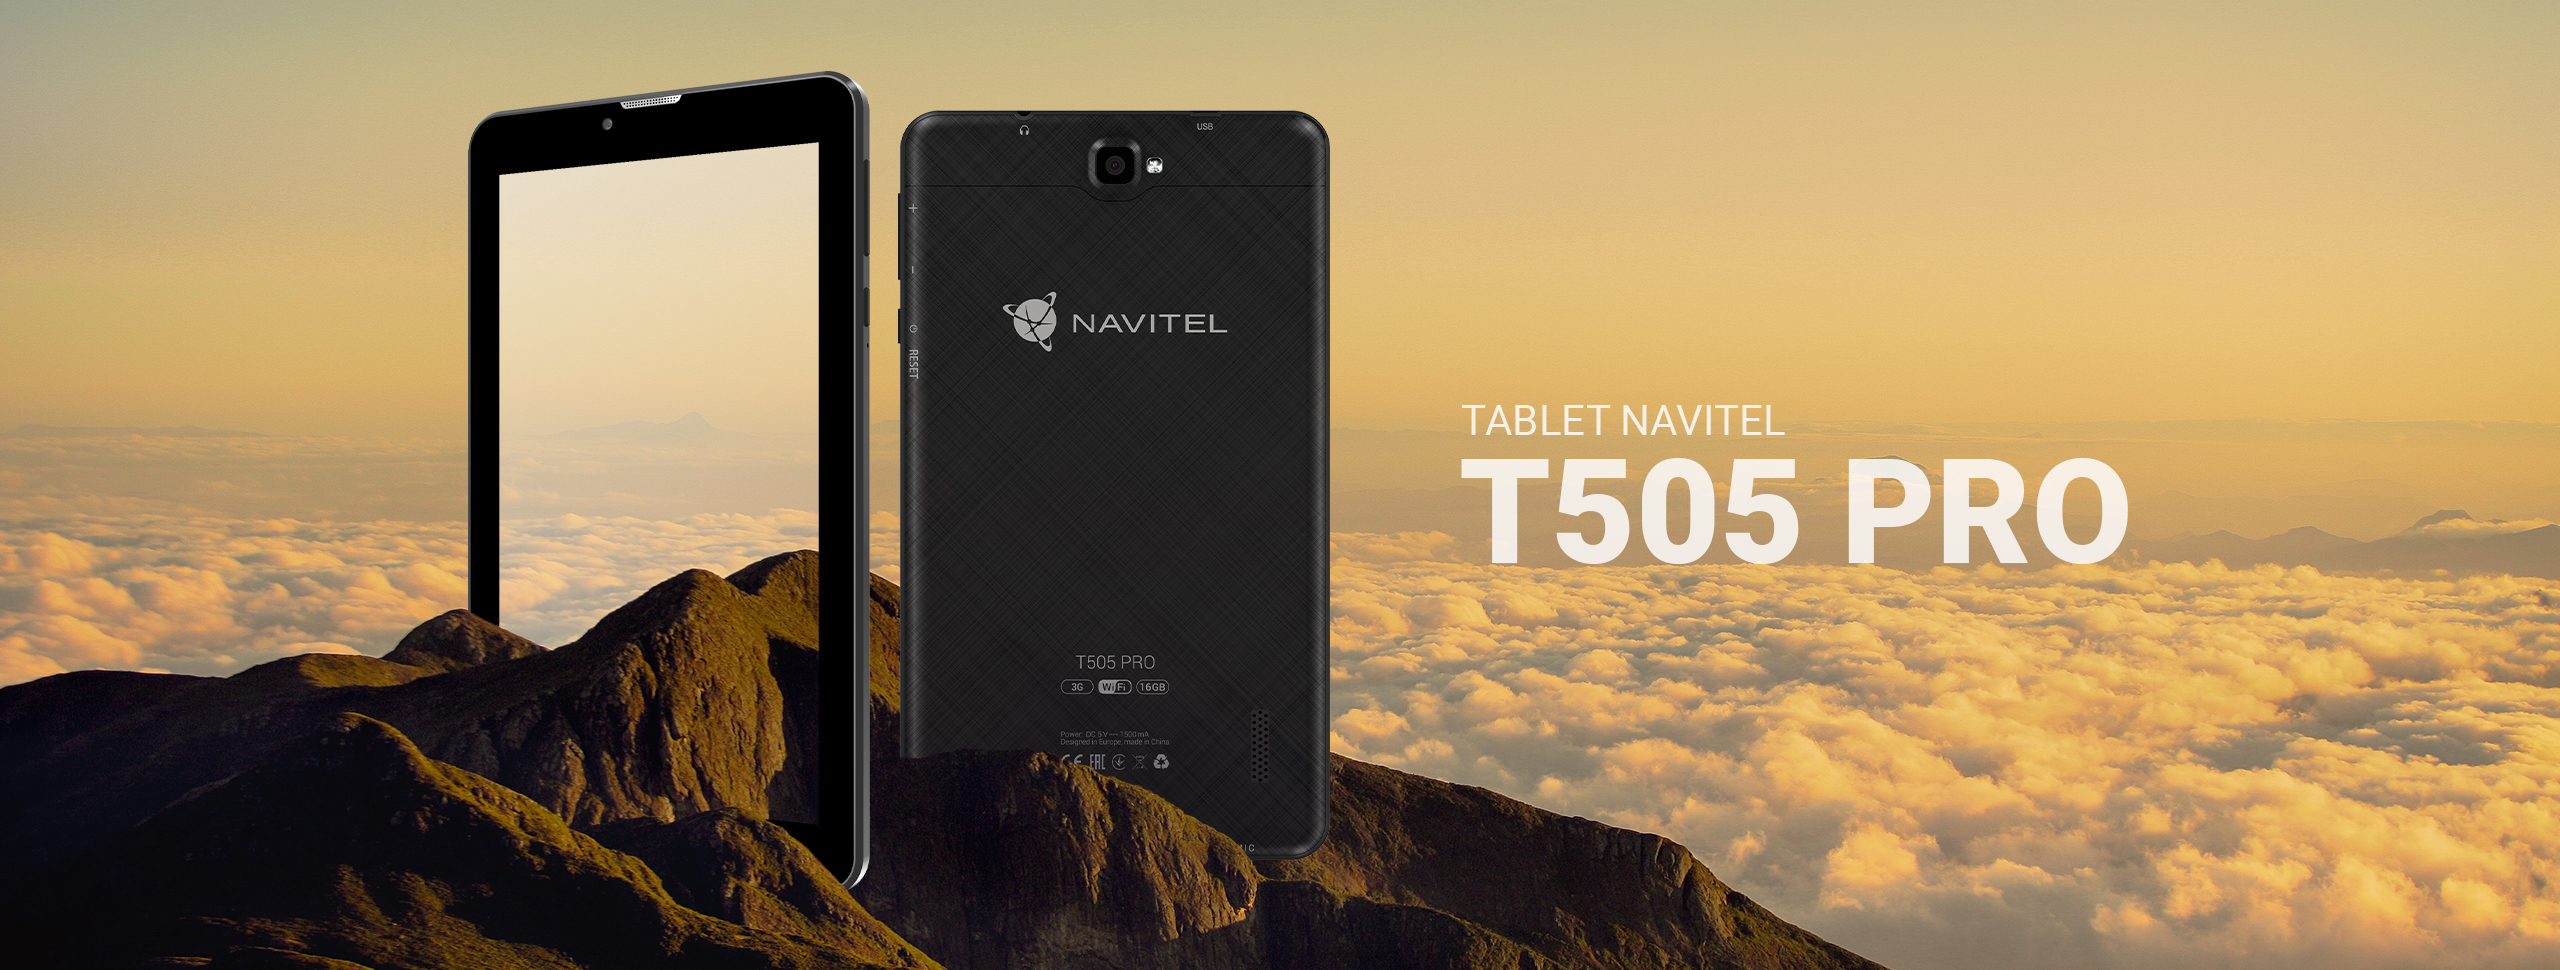 Tablet z nawigacją GPS NAVITEL T505 PRO